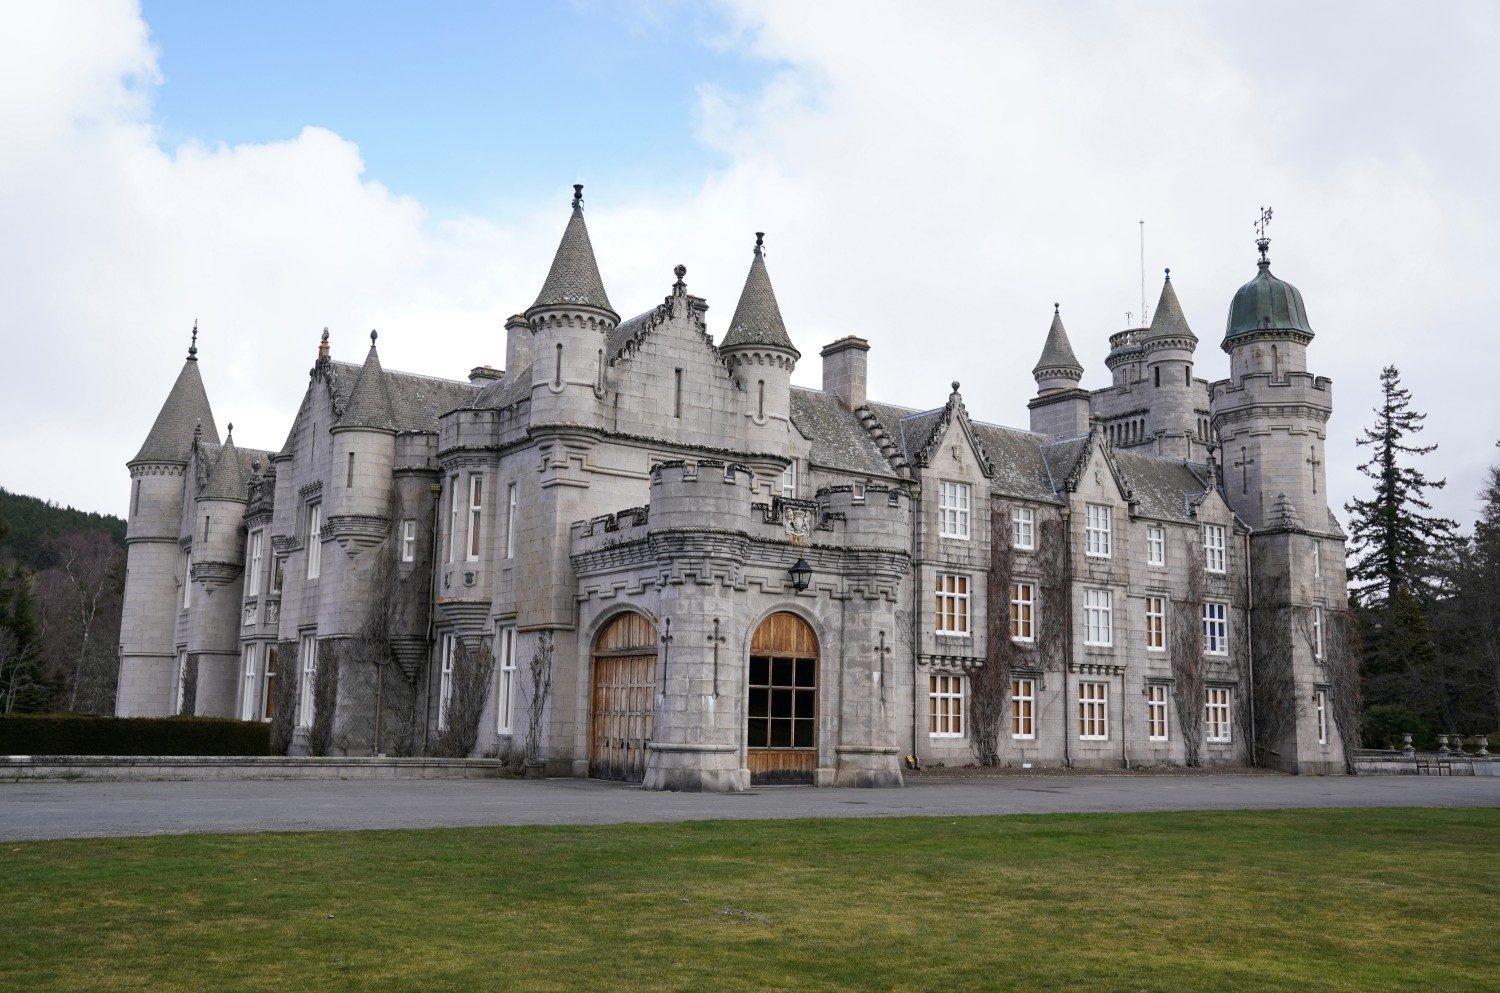   Le château de Balmoral était principalement utilisé par la reine pour réunir sa famille